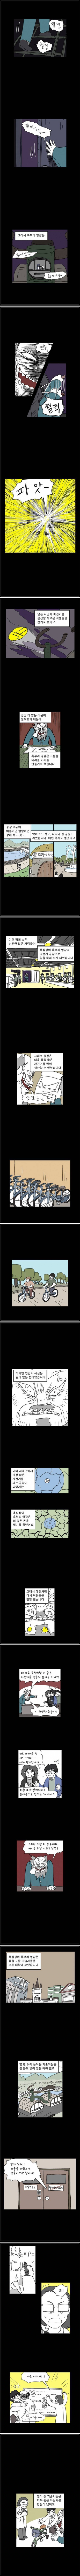 간만에 보는 명작 '욕심쟁이 자전거 만화' | 인스티즈